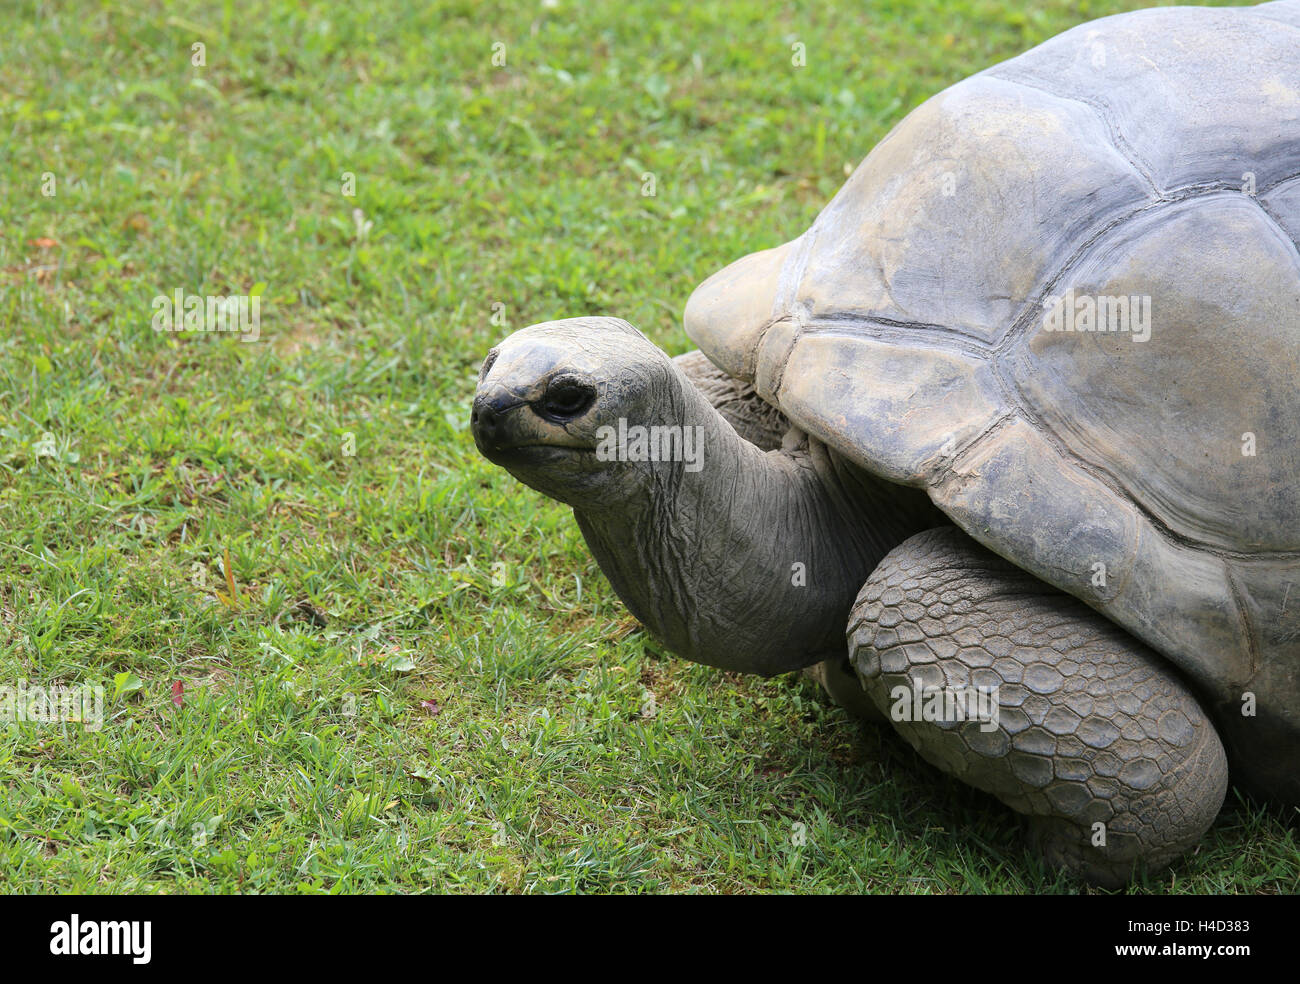 sehr große und alte Schildkröte mit robusten Hülle während des Gehens auf Rasen Stockfoto